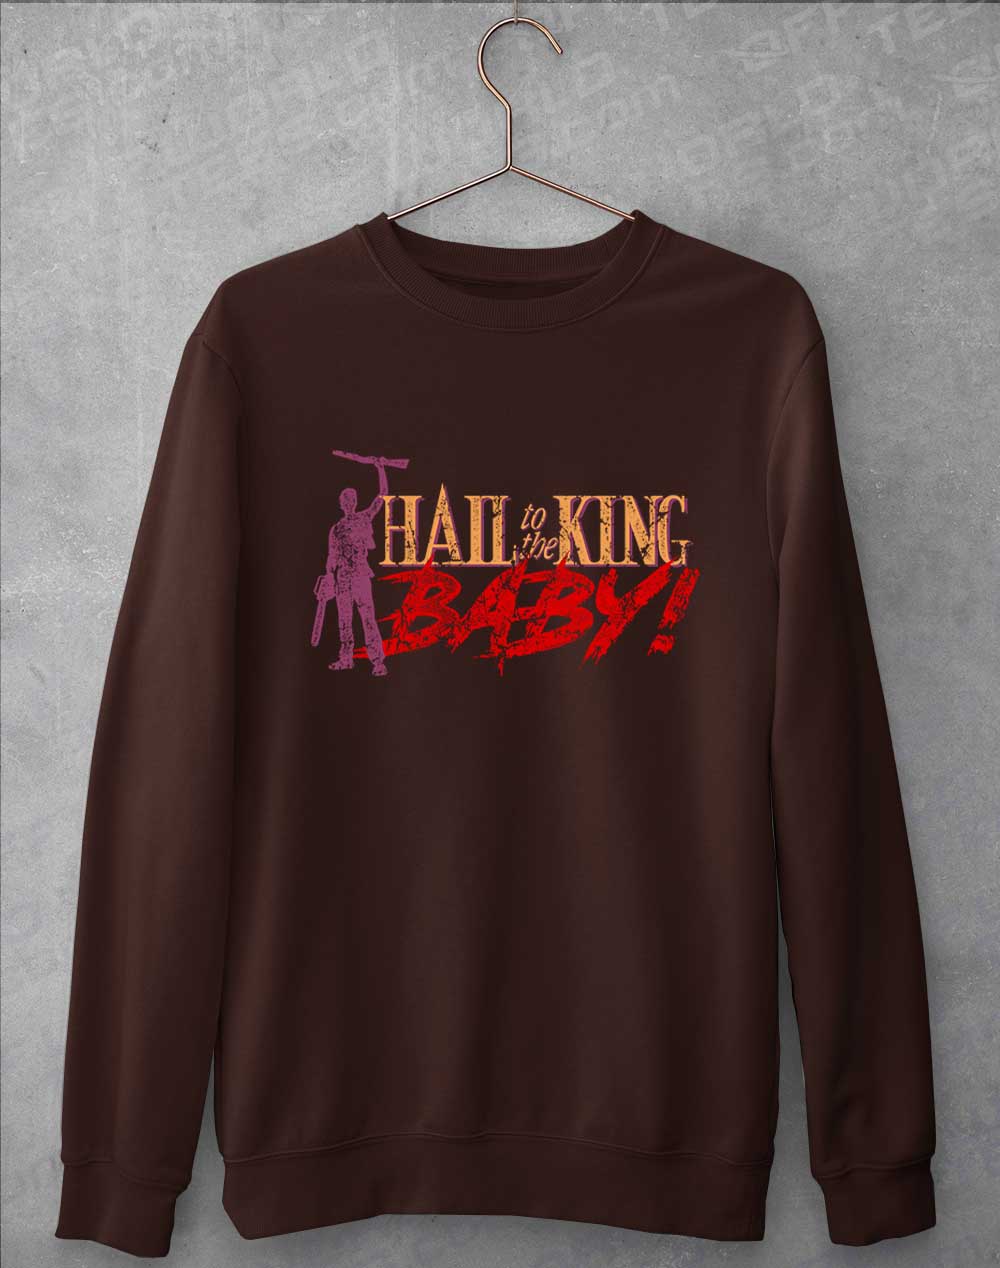 Hot Chocolate - Hail to the King Baby Sweatshirt